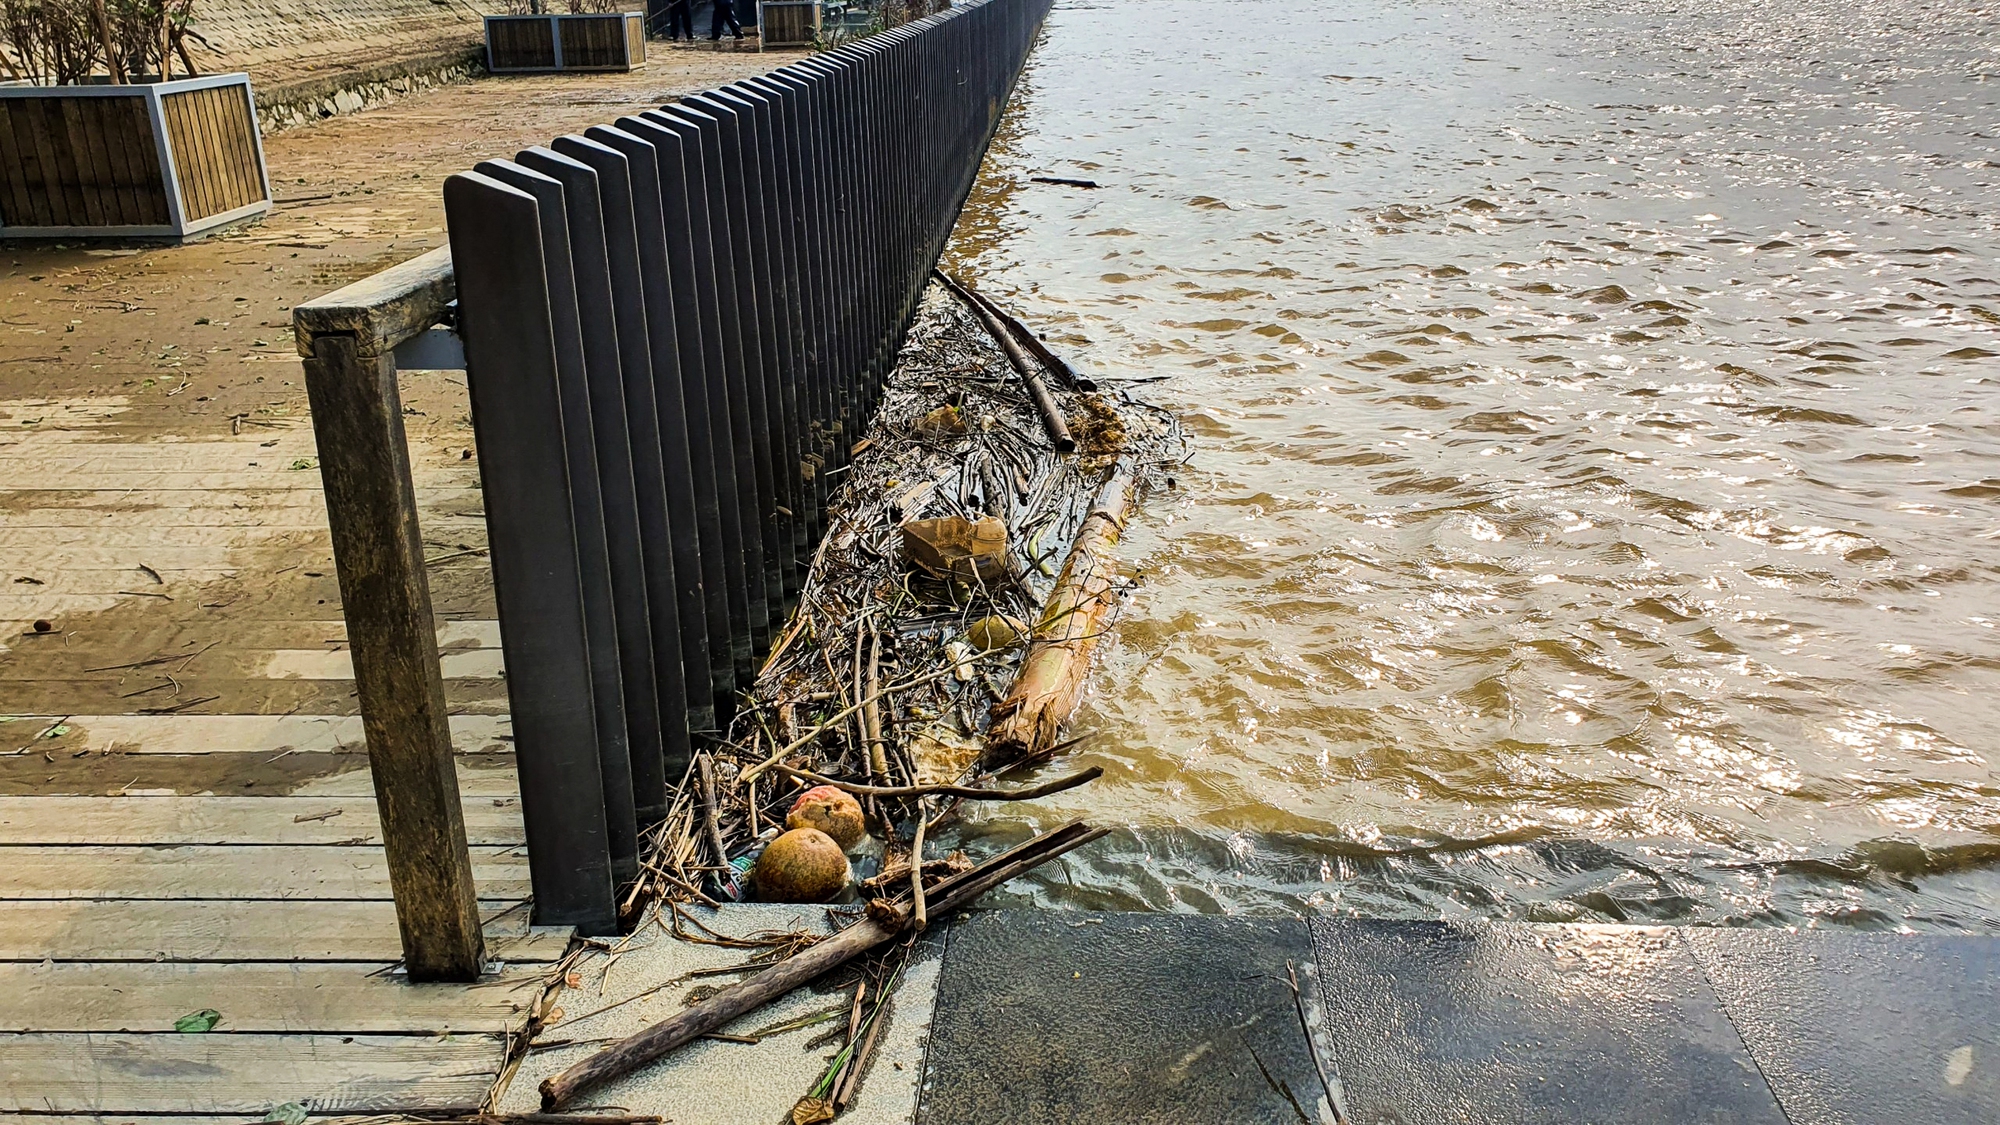 Rác dồn đống bên cầu gỗ lim trên sông Hương, lực lượng chức năng ra sức dọn dẹp - Ảnh 6.